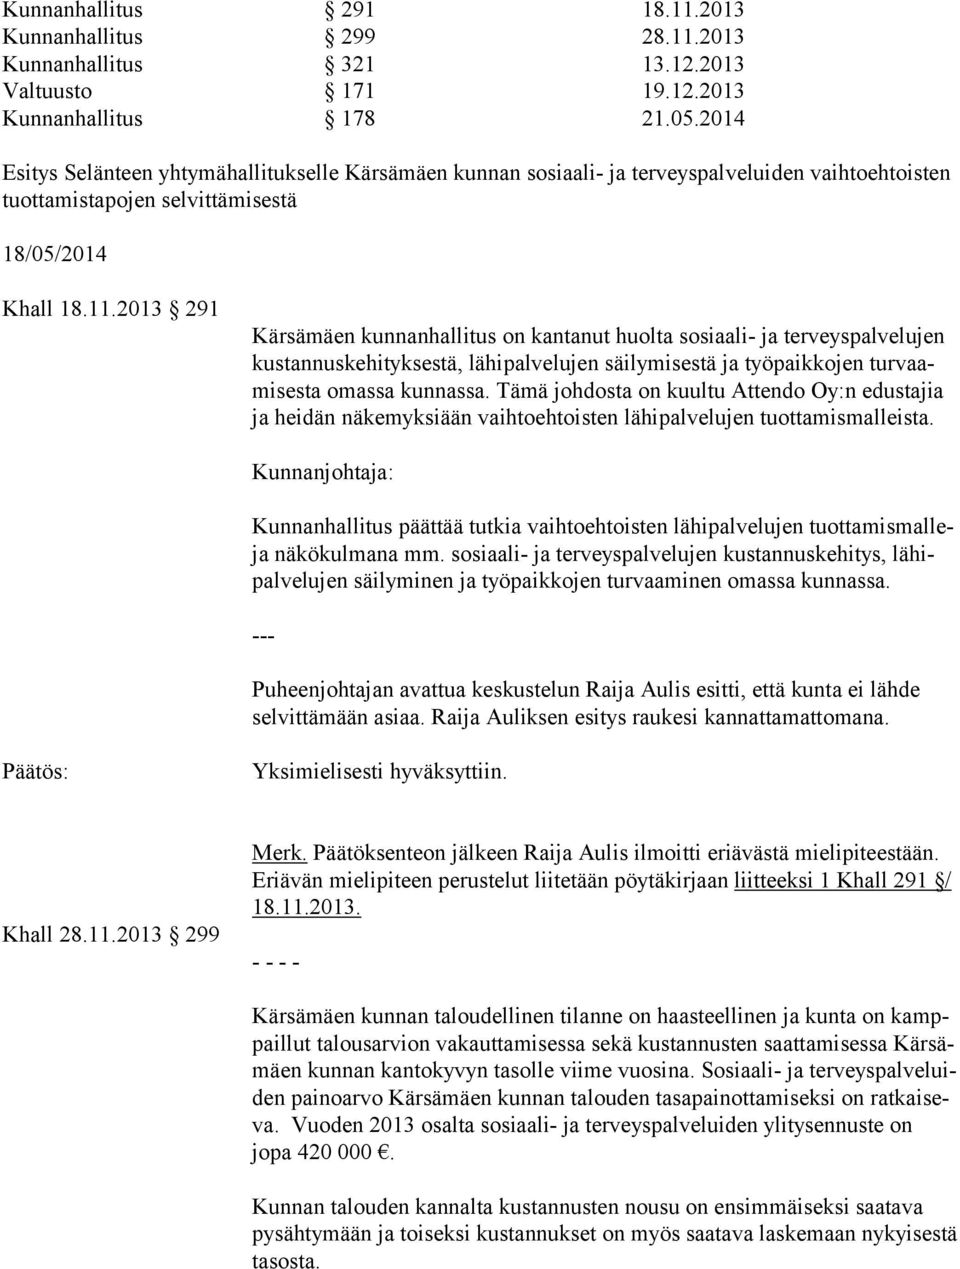 2013 291 Kärsämäen kunnanhallitus on kantanut huolta sosiaali- ja terveyspalvelujen kus tan nus ke hi tyk ses tä, lähipalvelujen säilymisestä ja työpaikkojen tur vaami ses ta omassa kunnassa.